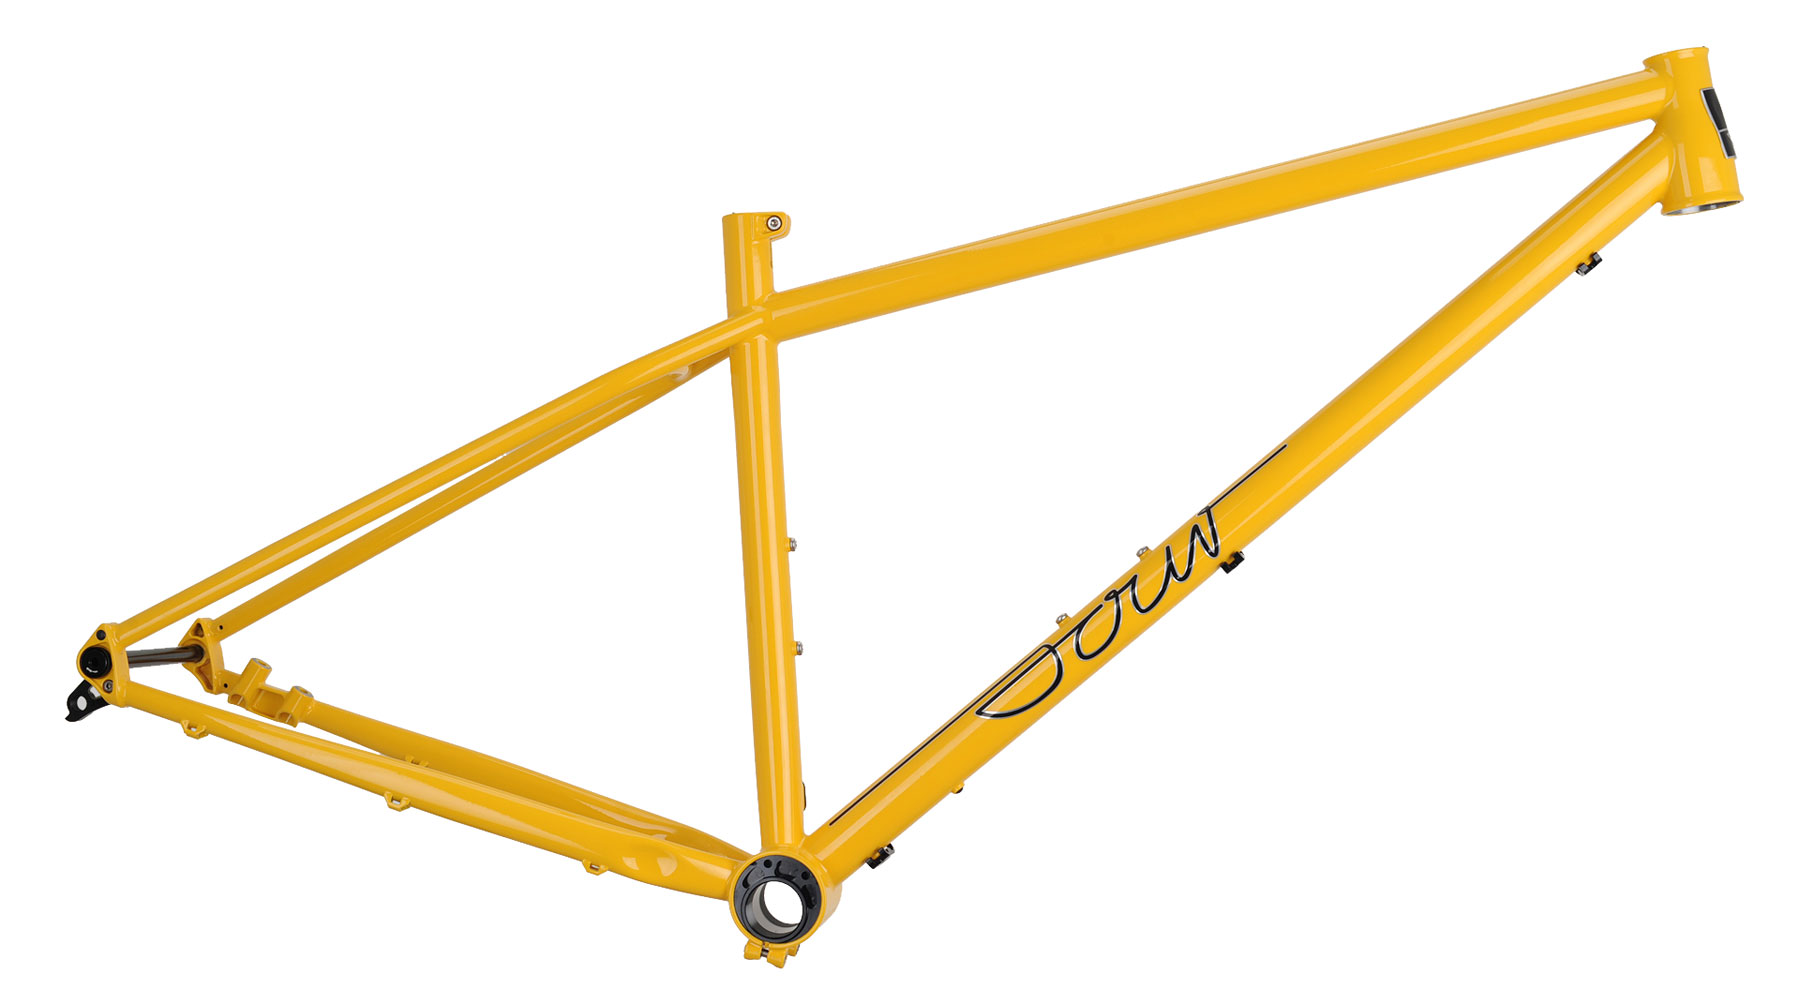 Sour Pasta Party steel XC hardtail mountain bike, yellow frame